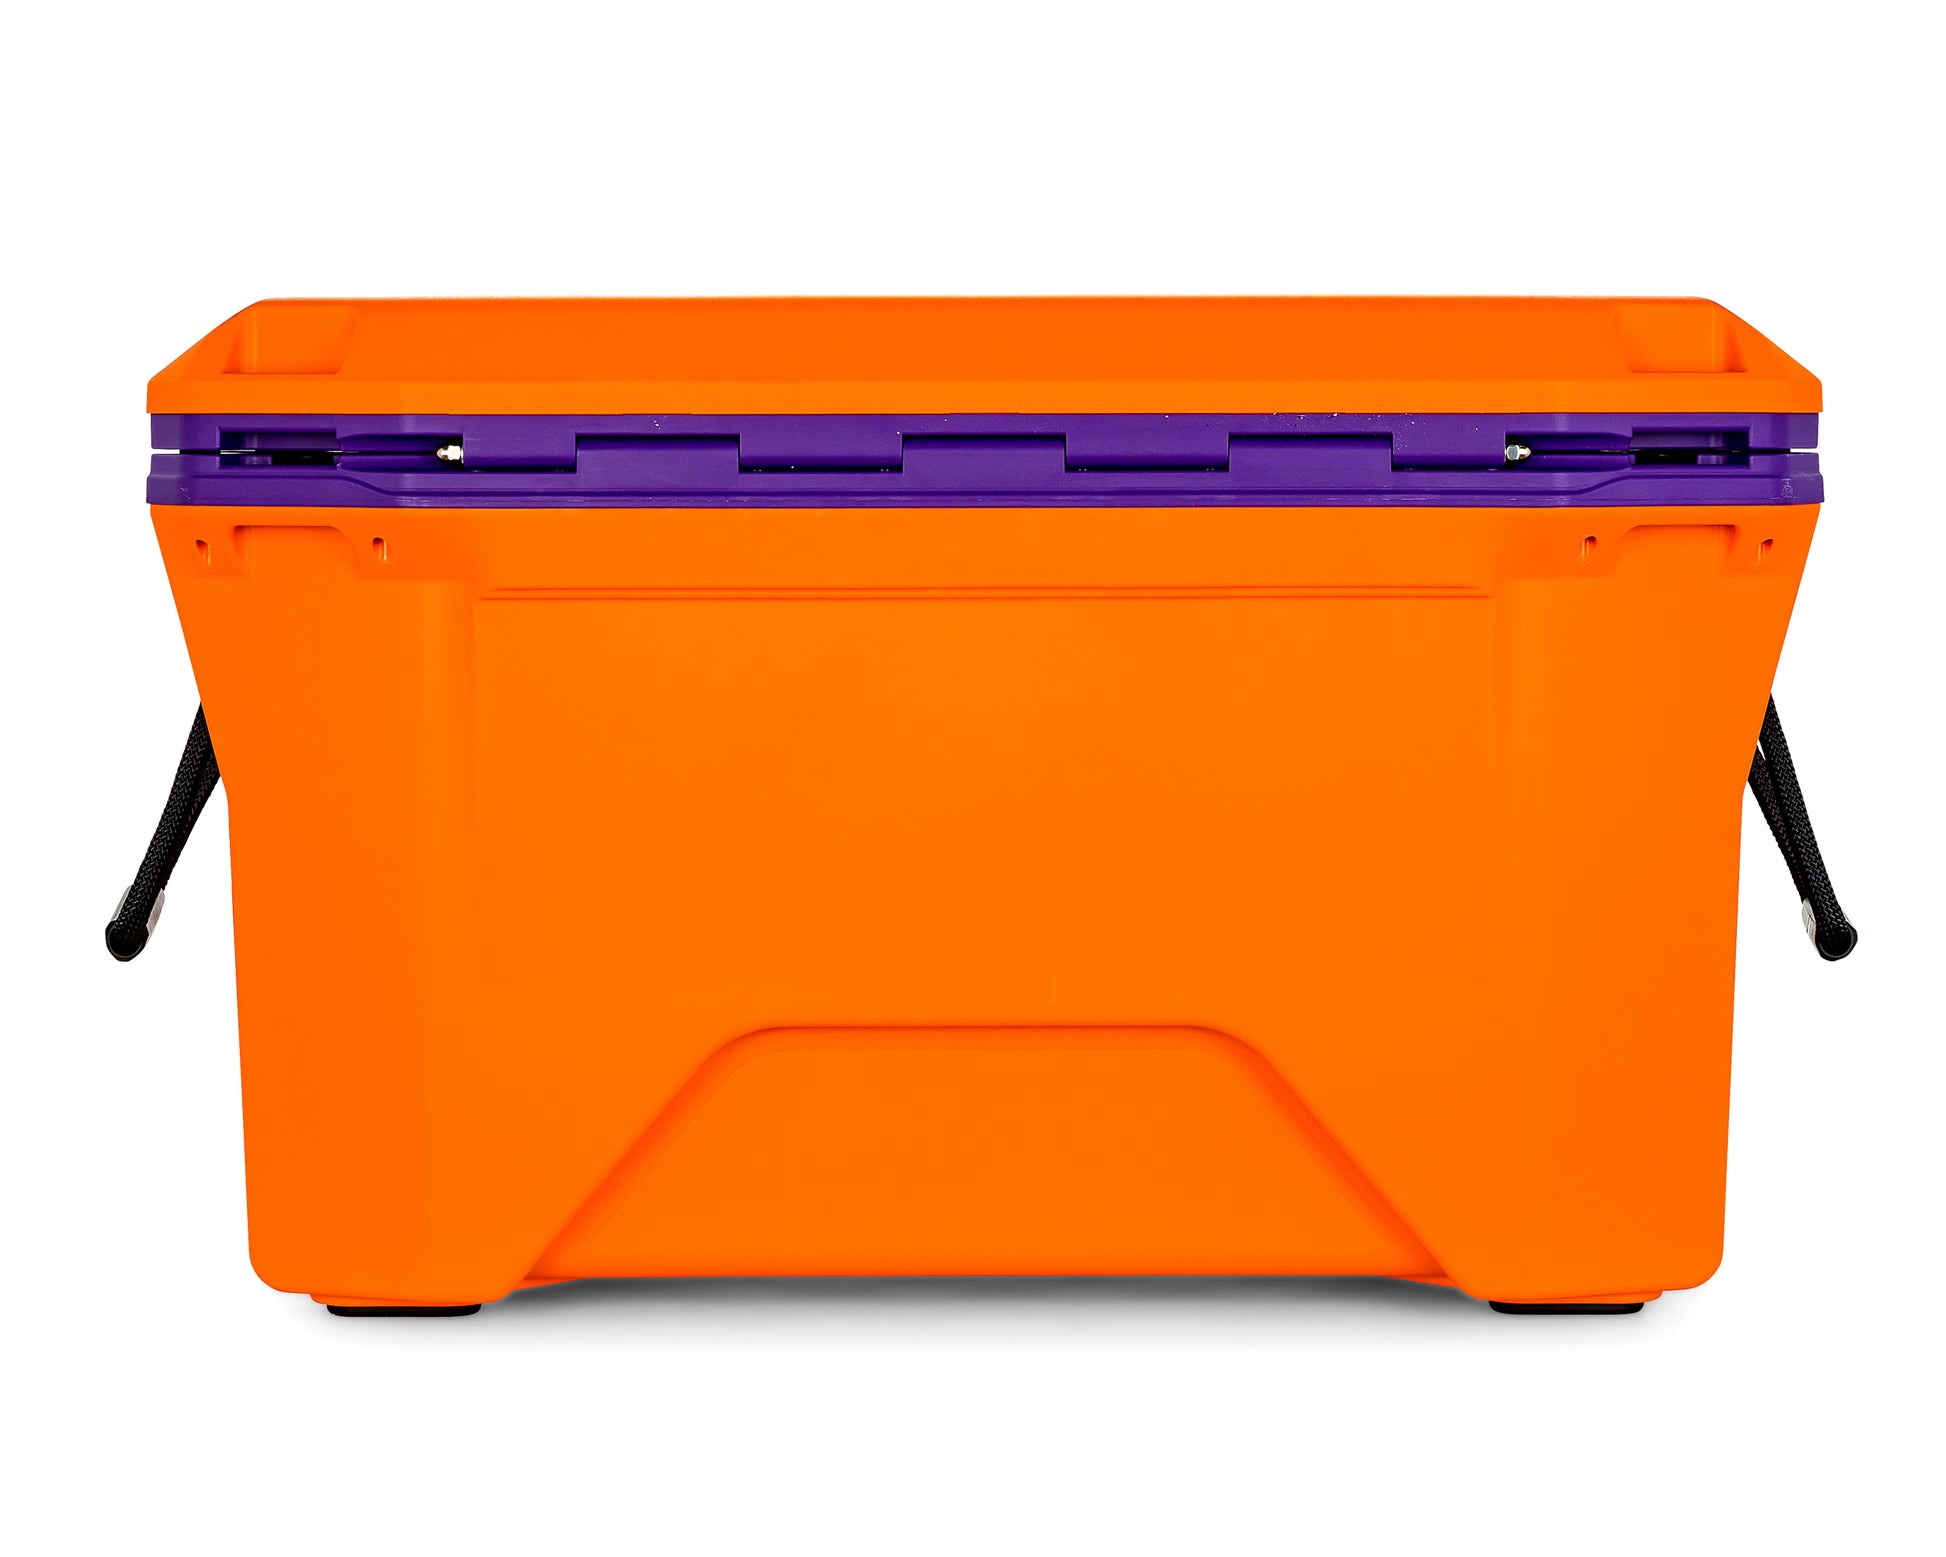 Currituck 50 Quart Premium Cooler - Orange & Purple – Camco Marine